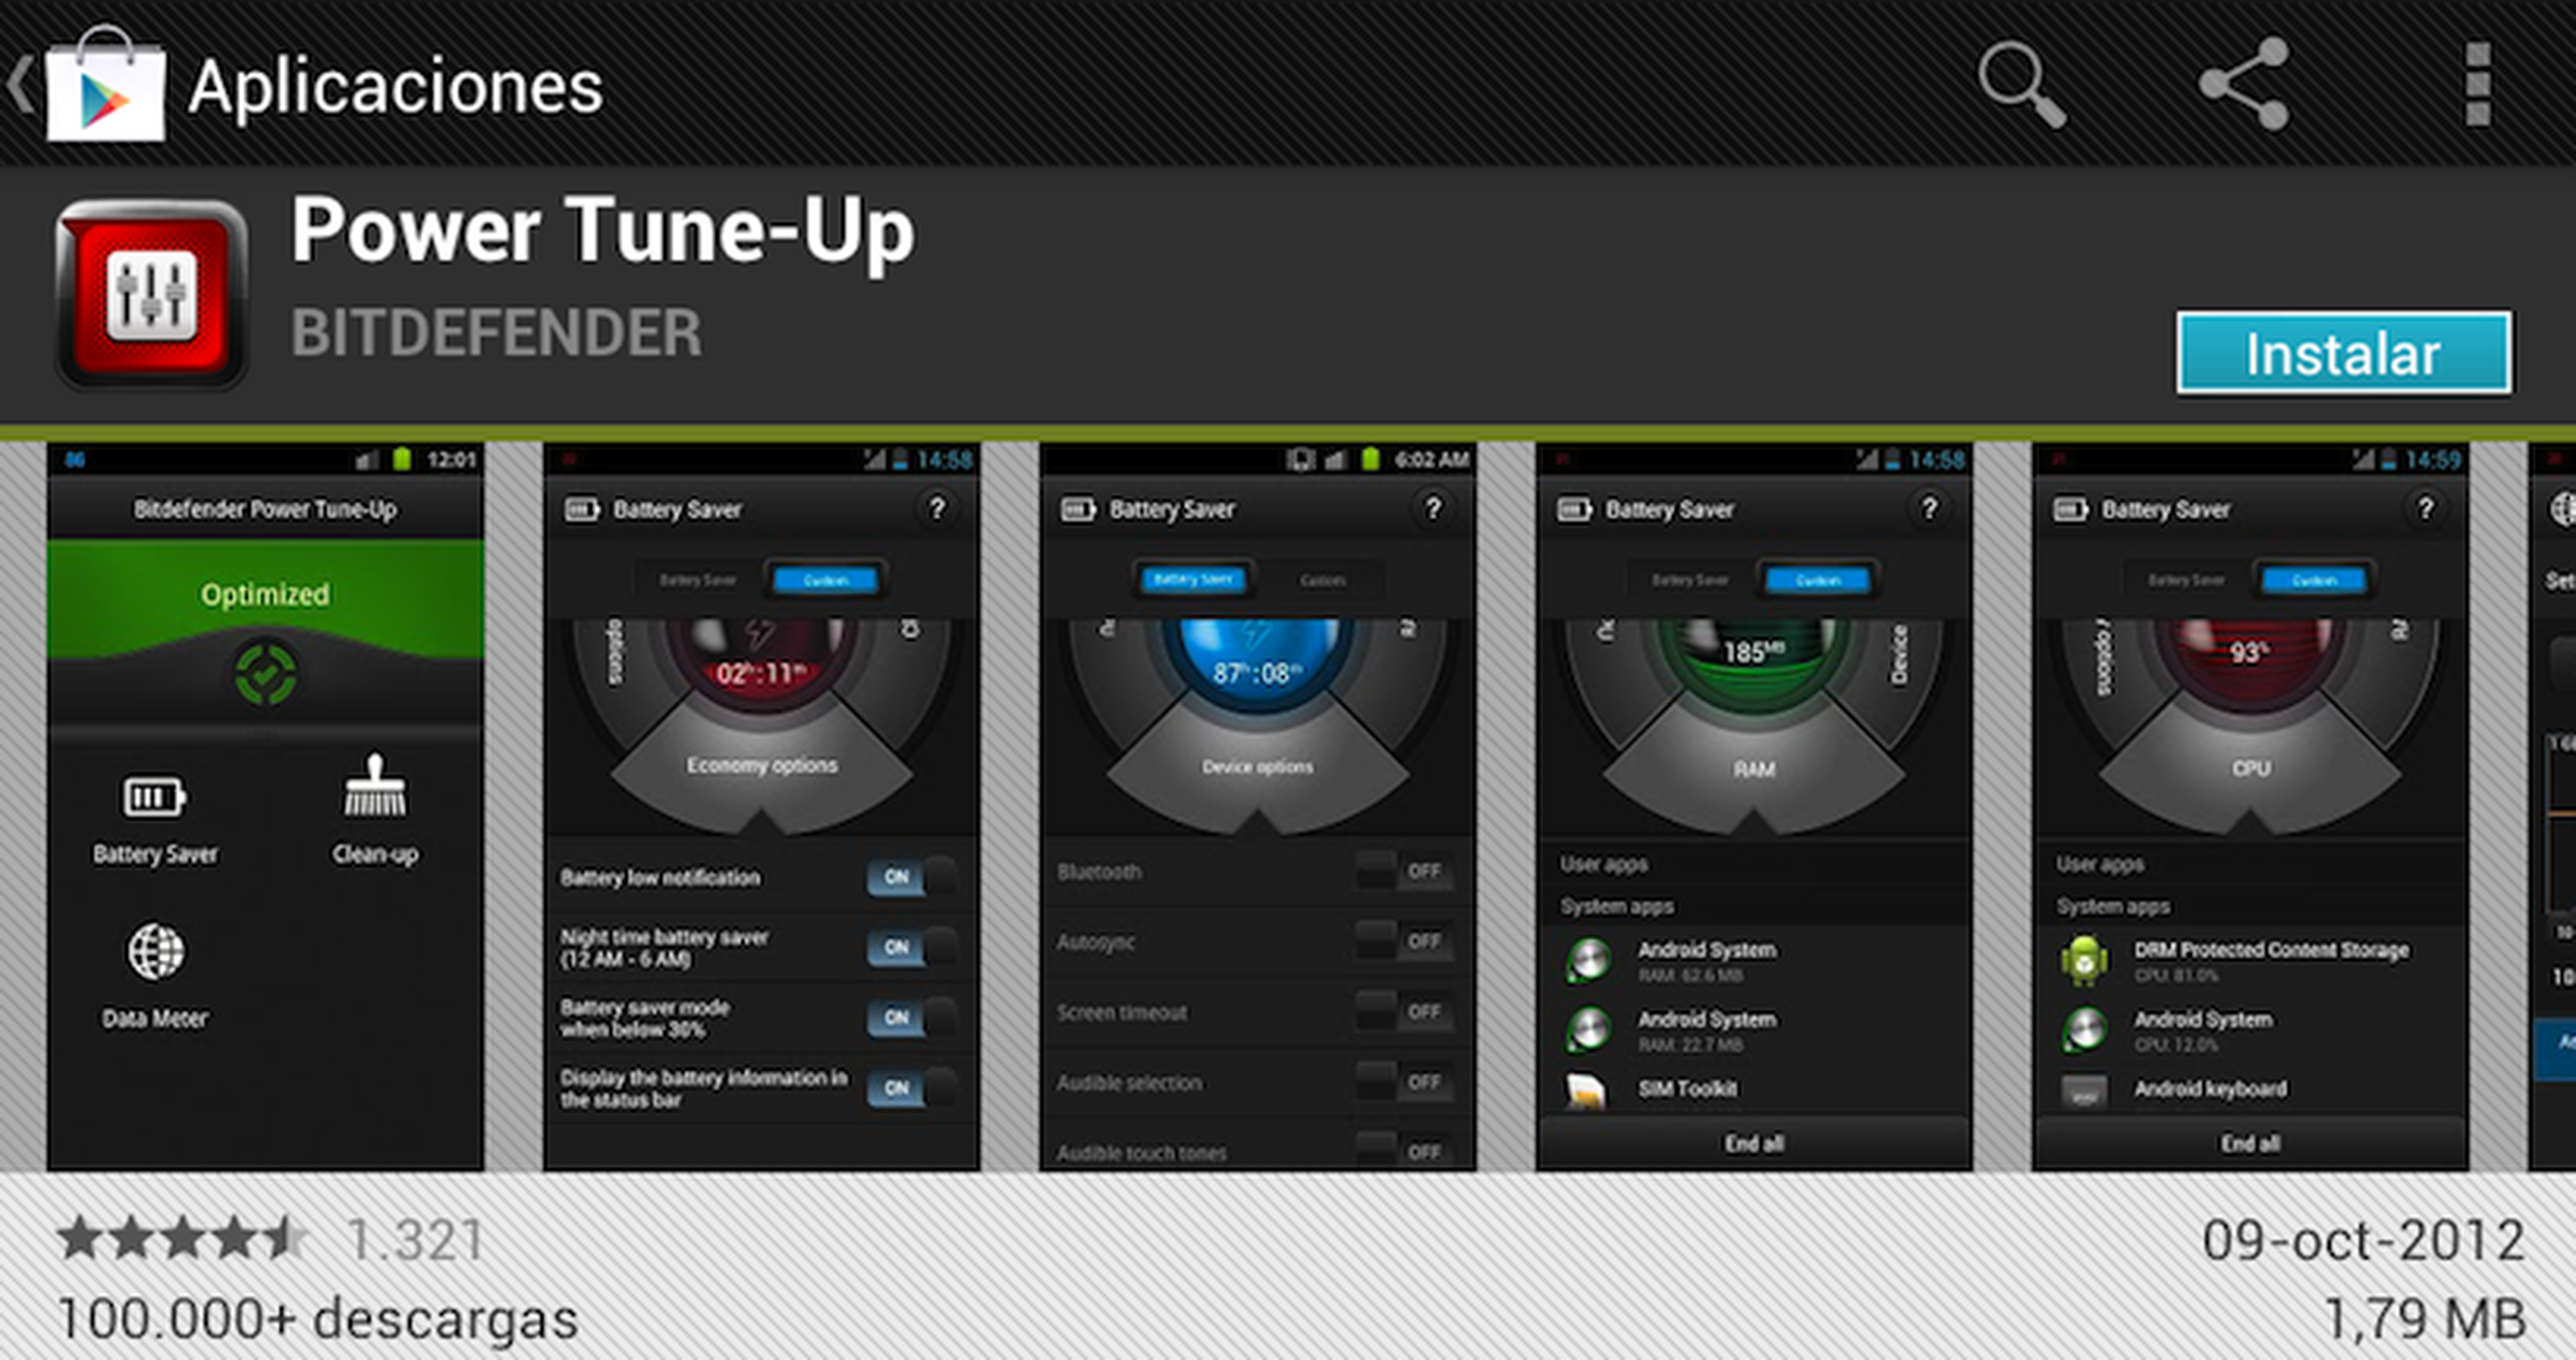 Power Tune-Up es gratuita y está en la tienda Google Play